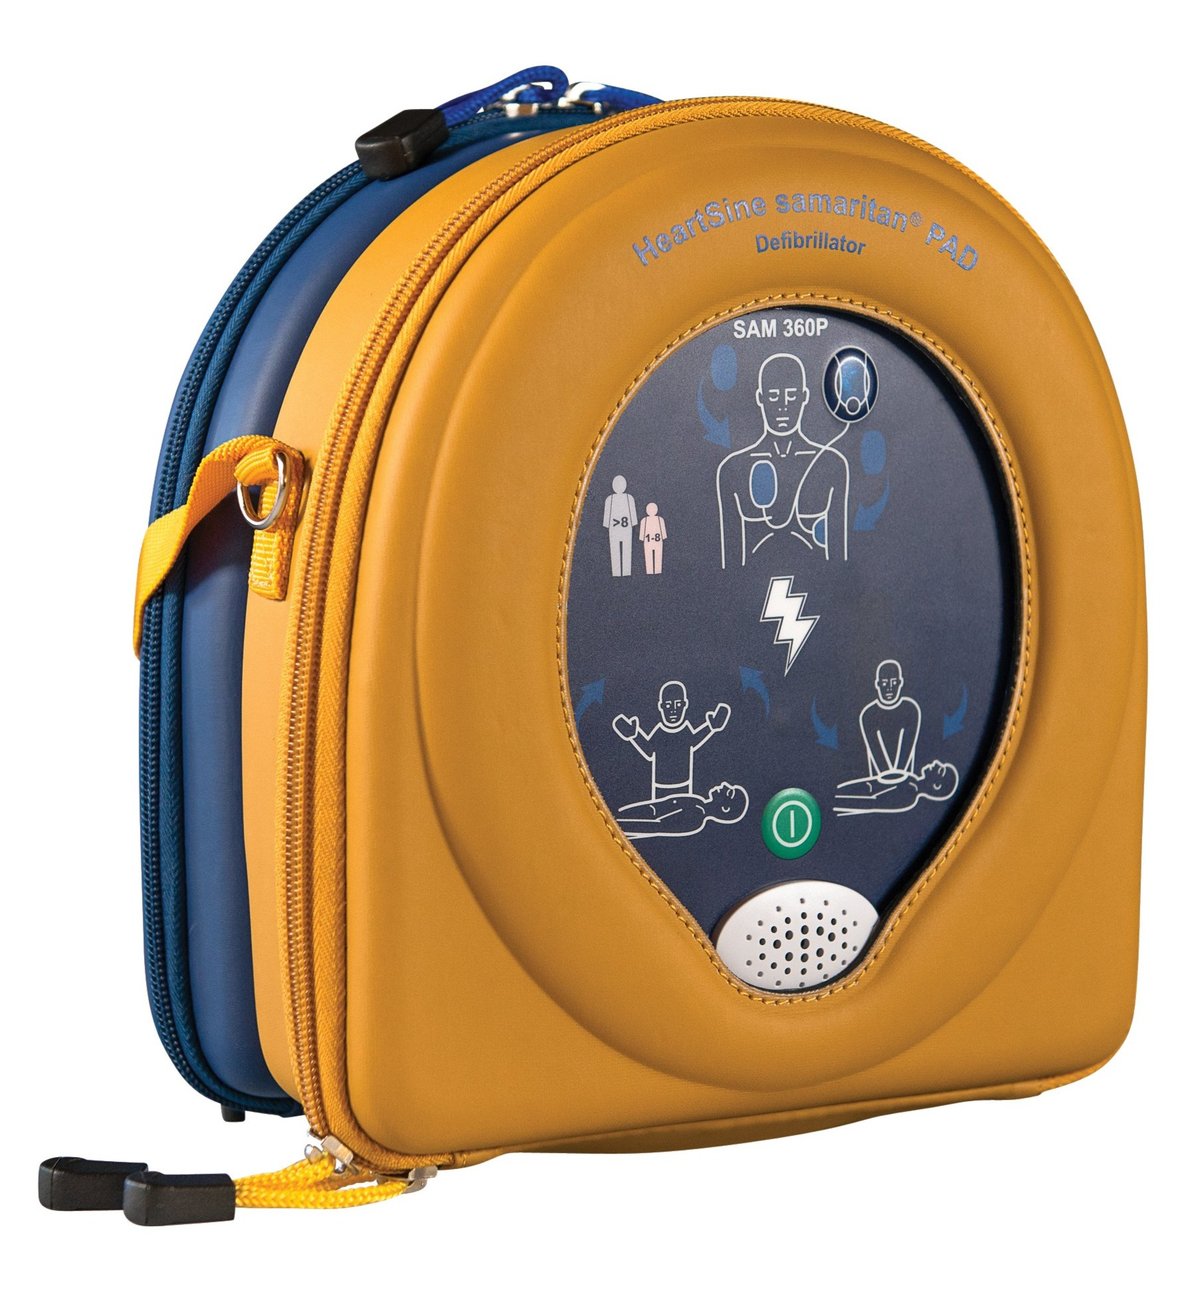 HeartSine Samaritan RD360 AED case